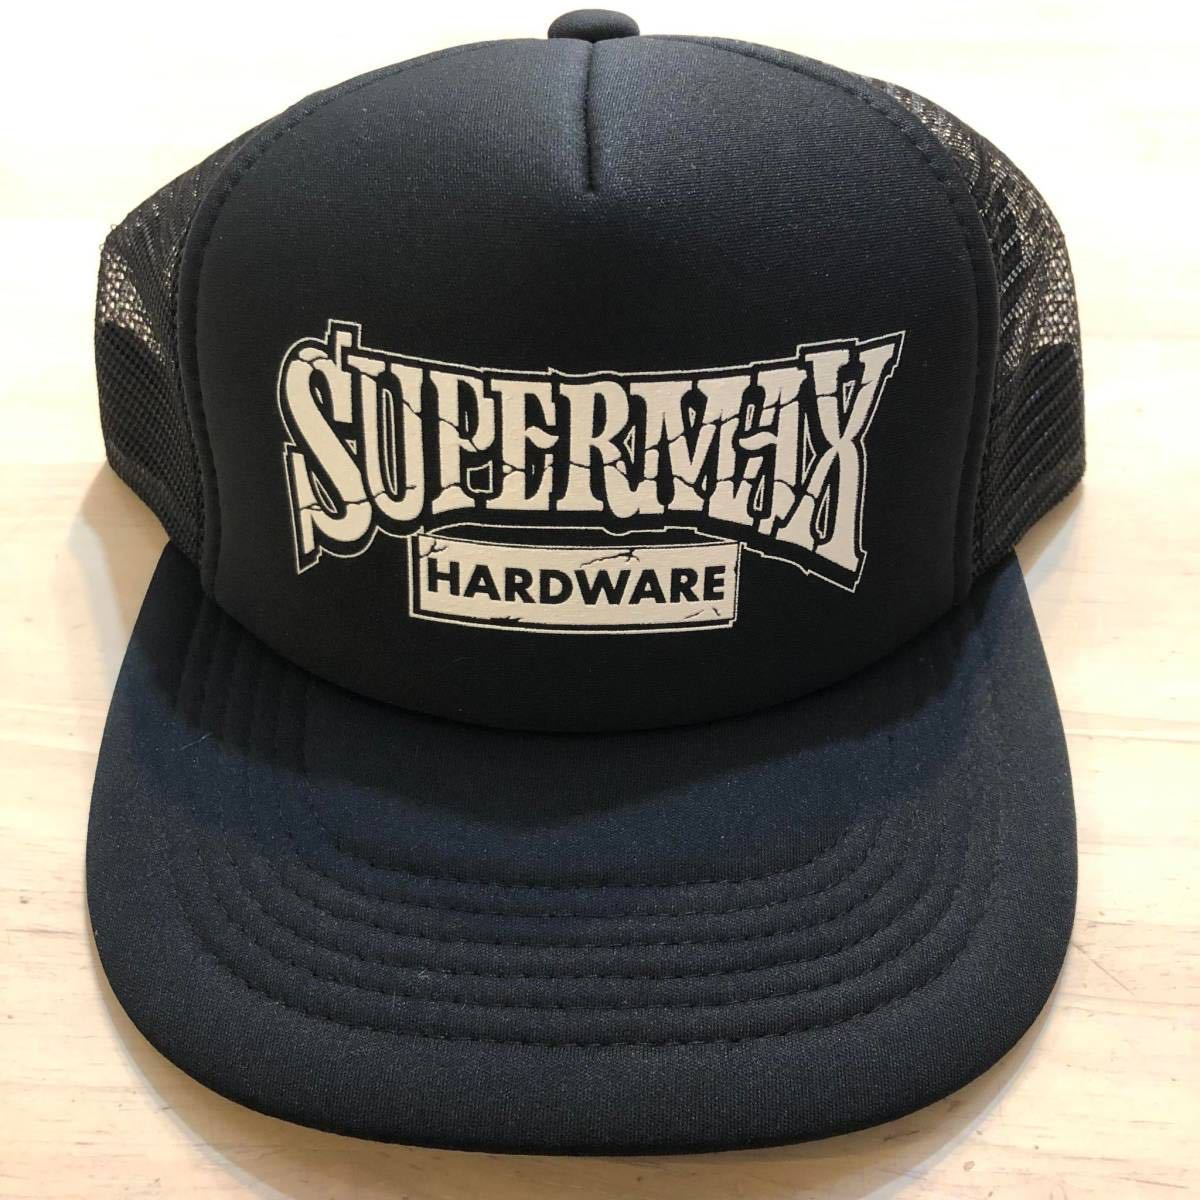 ◎SUPERMAX HARDWARE スーパーマックス ステッカー付! トラッカー キャップ 黒#0 ロサンゼルス hardcore Streetbrand チカーノ Lowrider_画像1